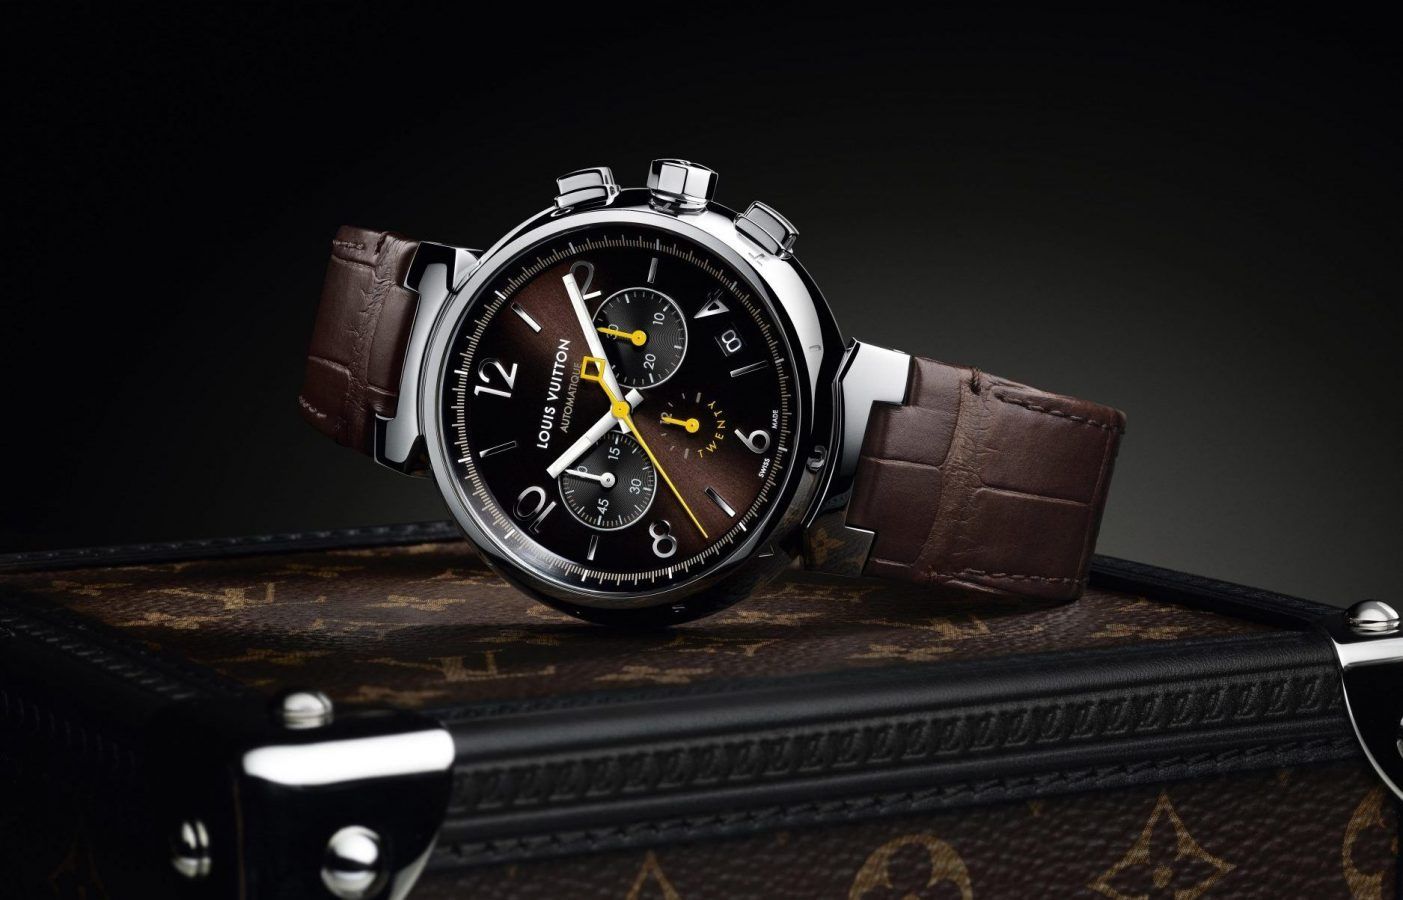 Louis Vuitton Unveils Tambour Street Diver Chronograph Watch